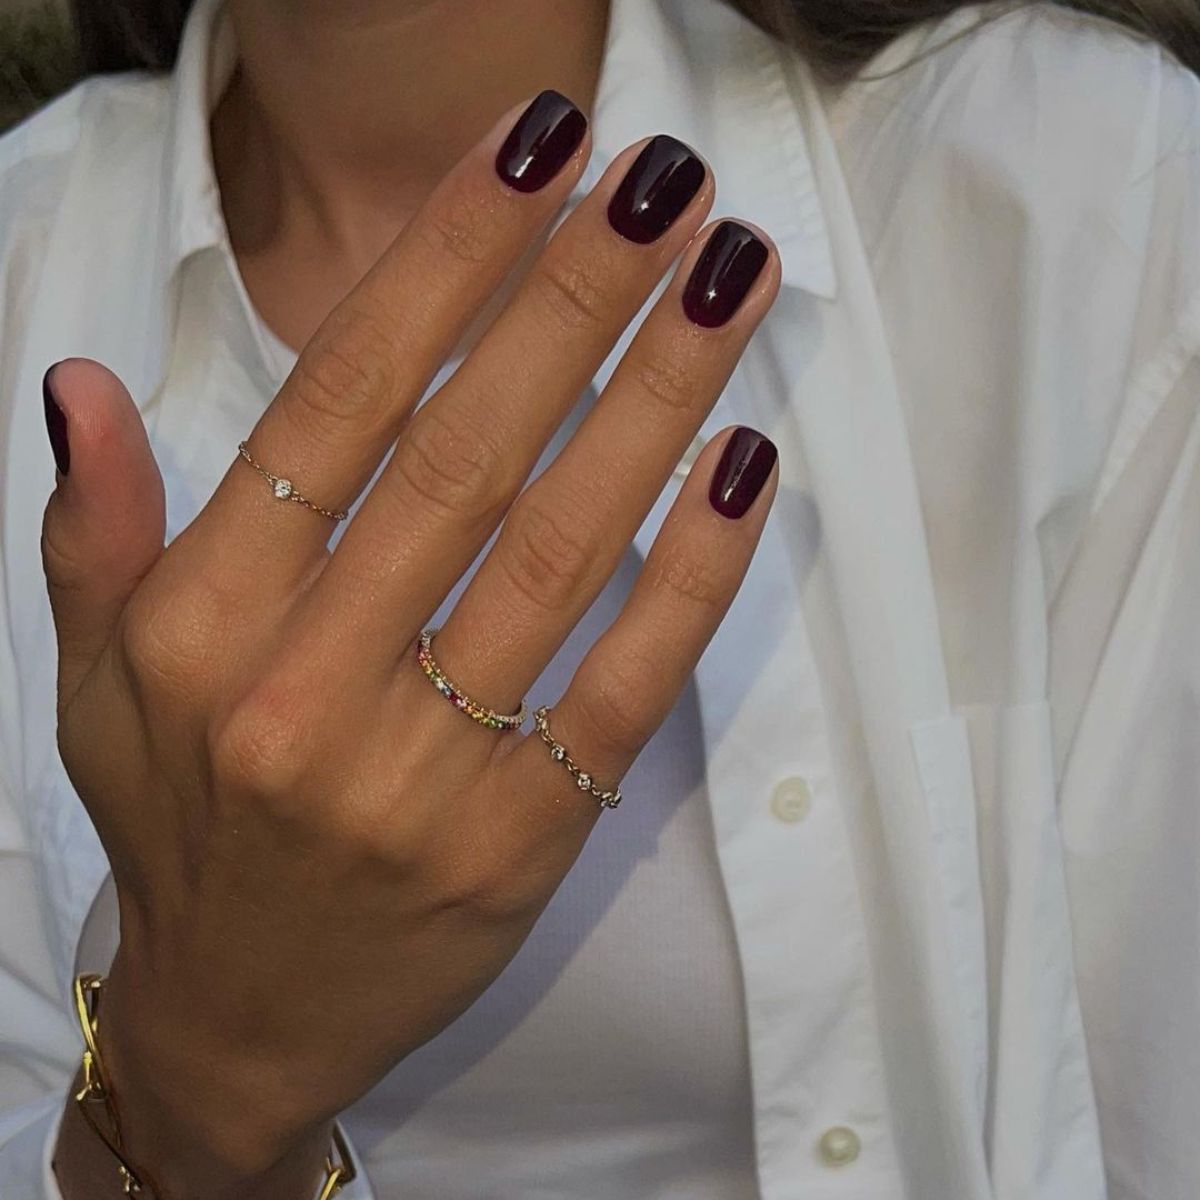 Maroon nail polish idea for dark skin tone | Maroon nail polish, Dark skin nail  polish, Maroon nails